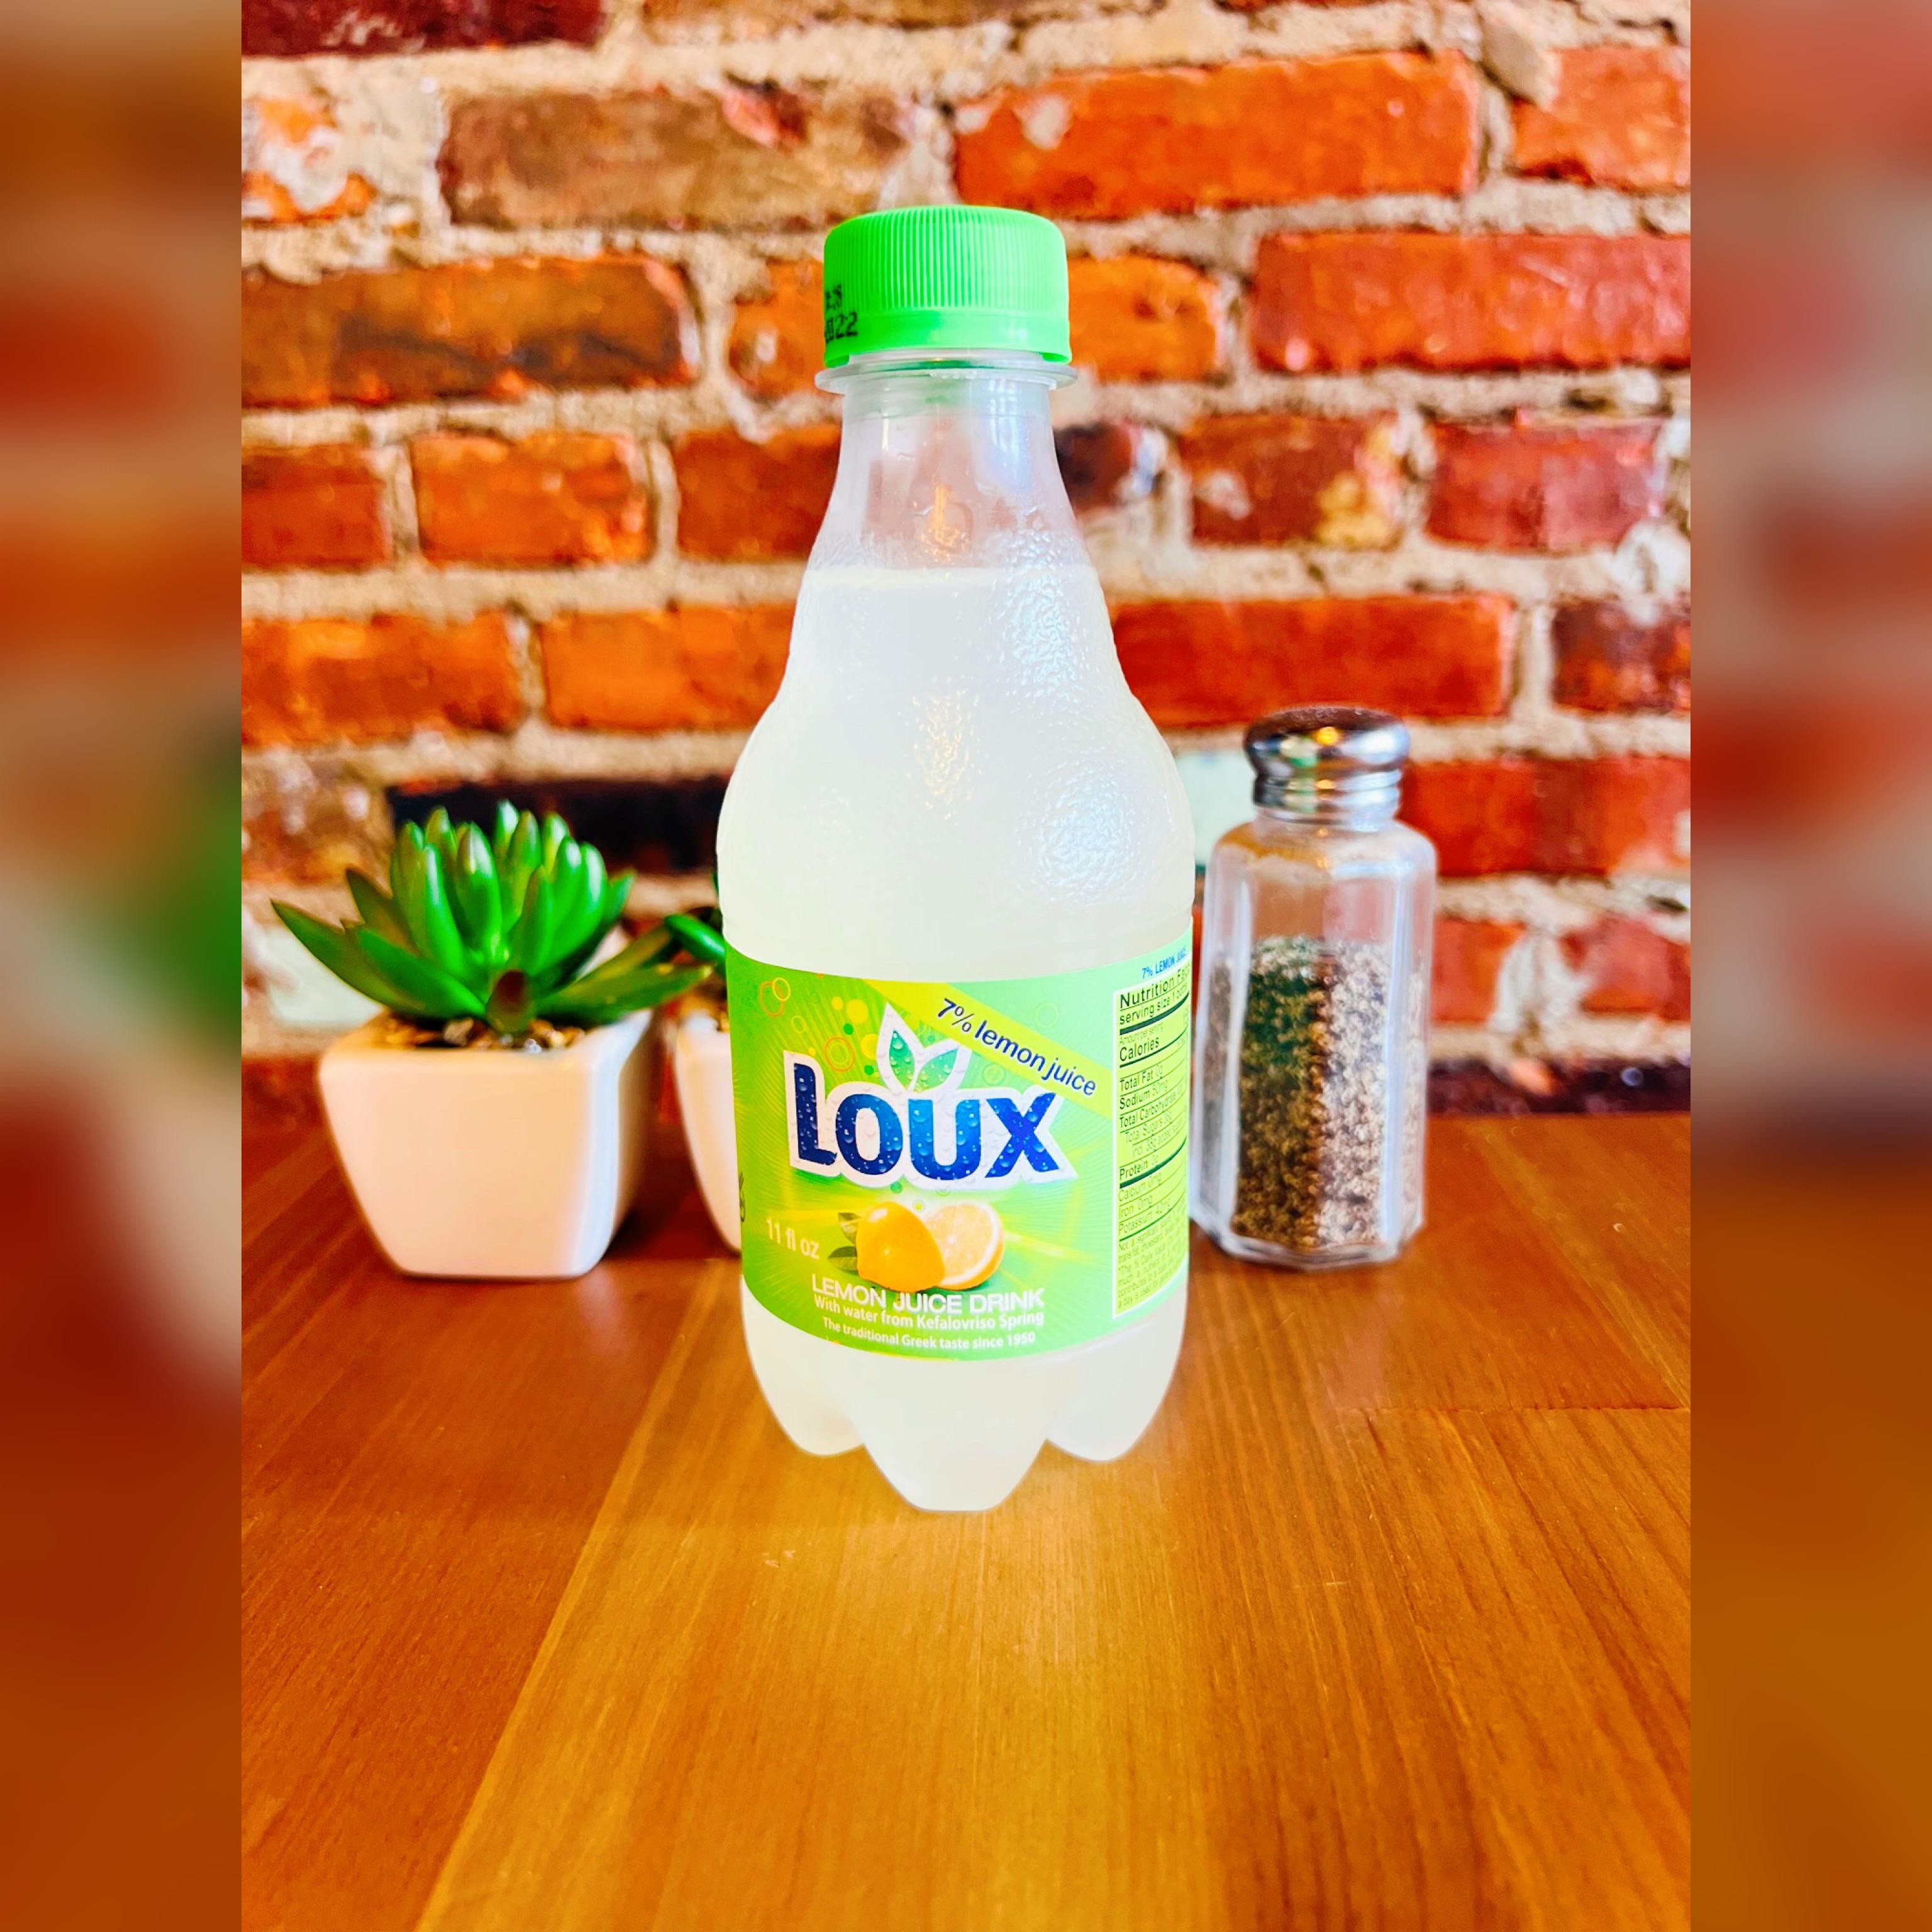 Loux Greek Lemonade